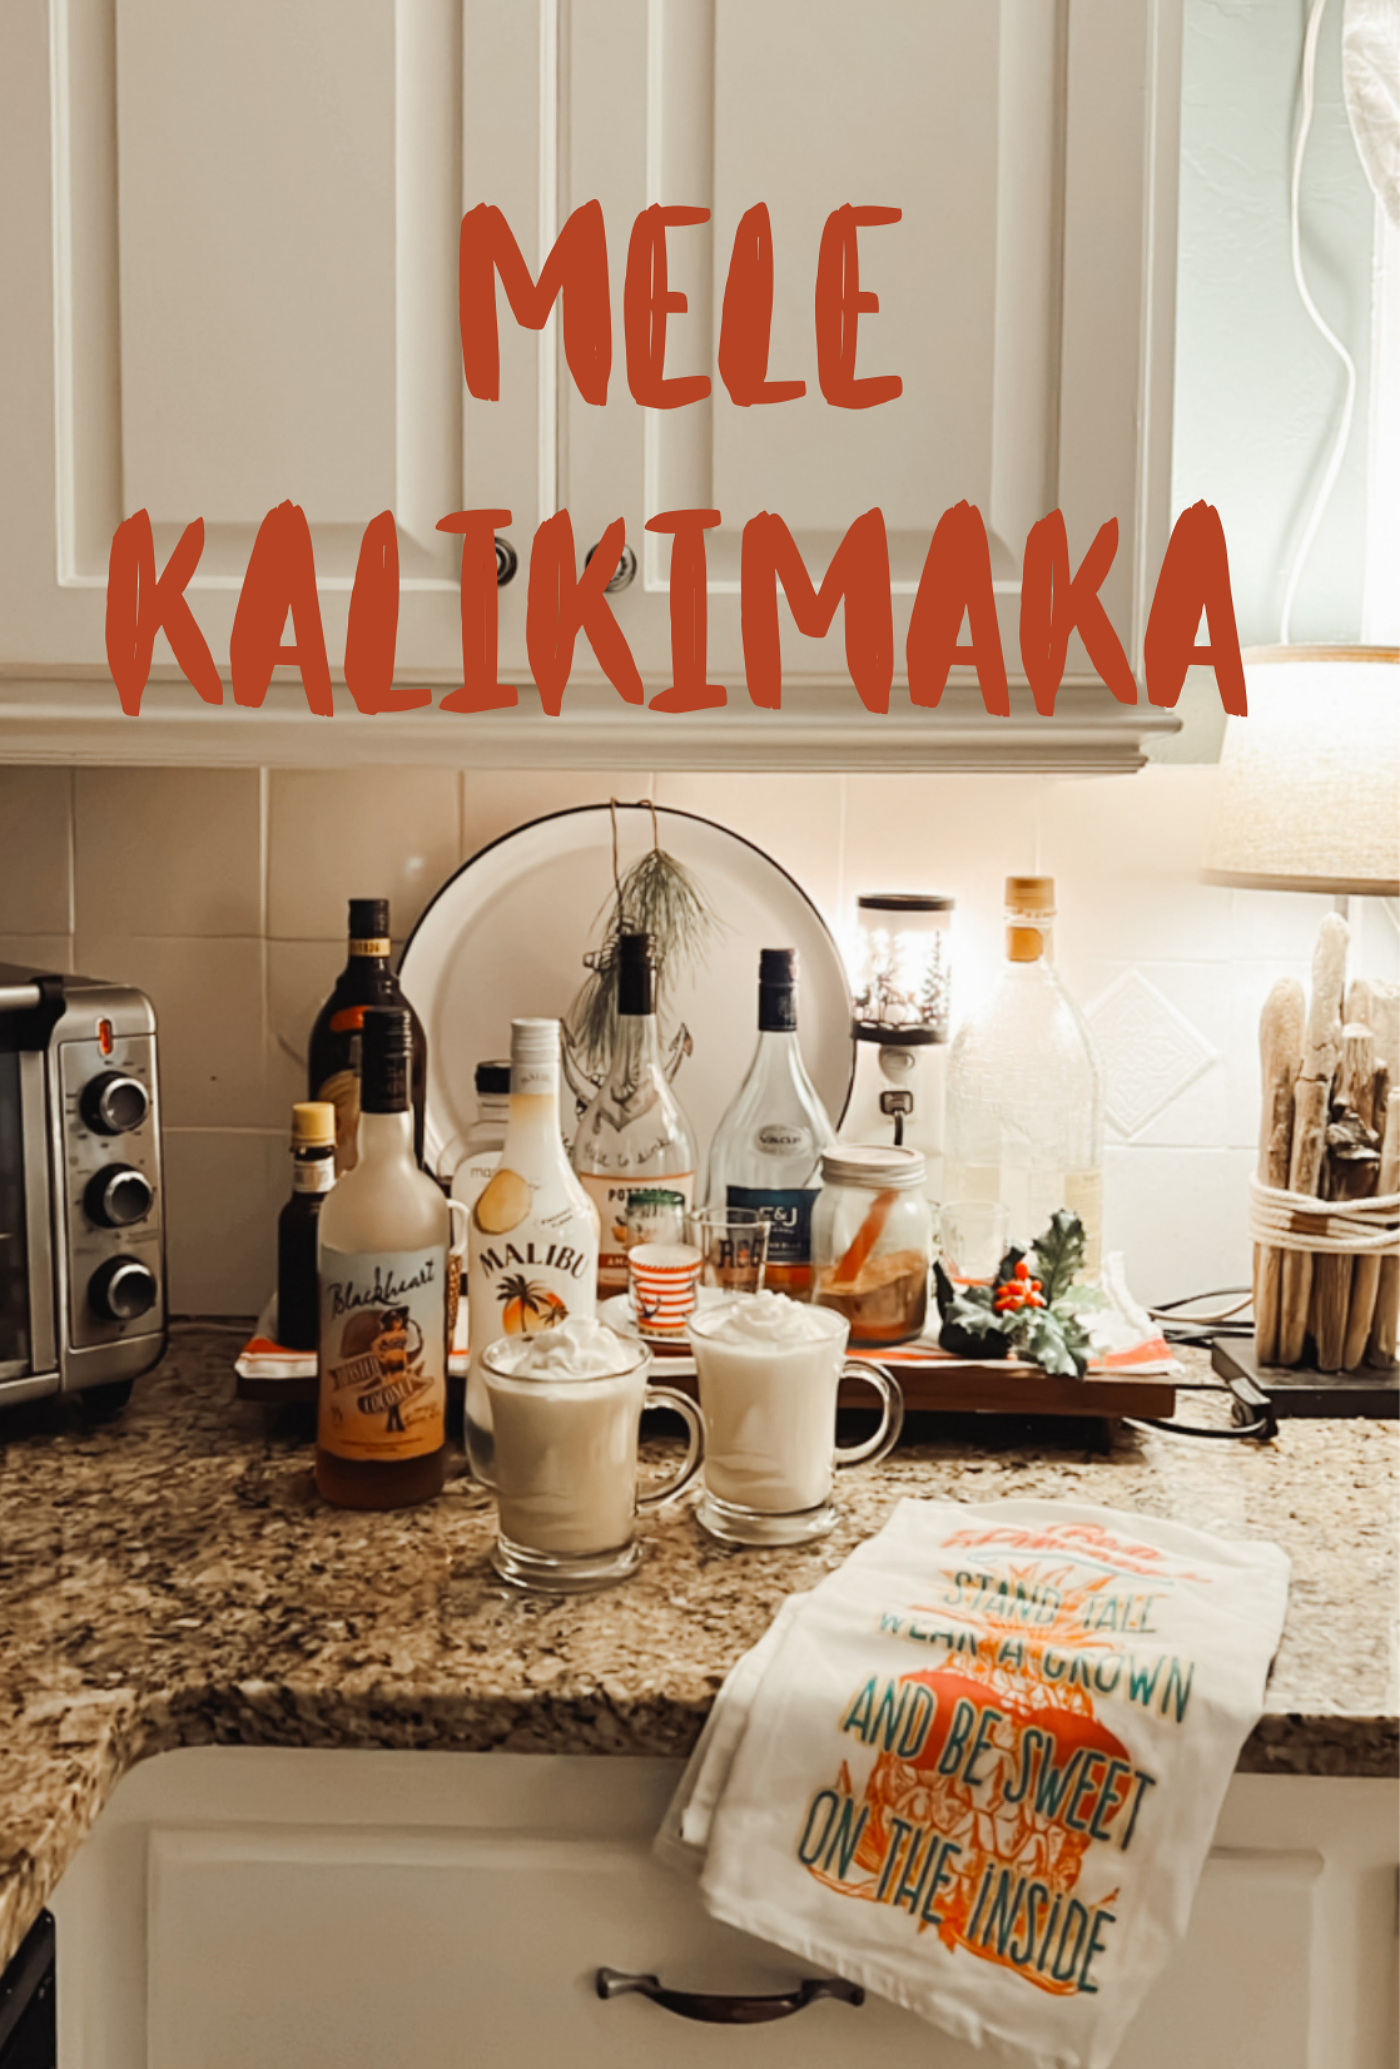 Mele Kalikimaka - A Holiday Cocktail